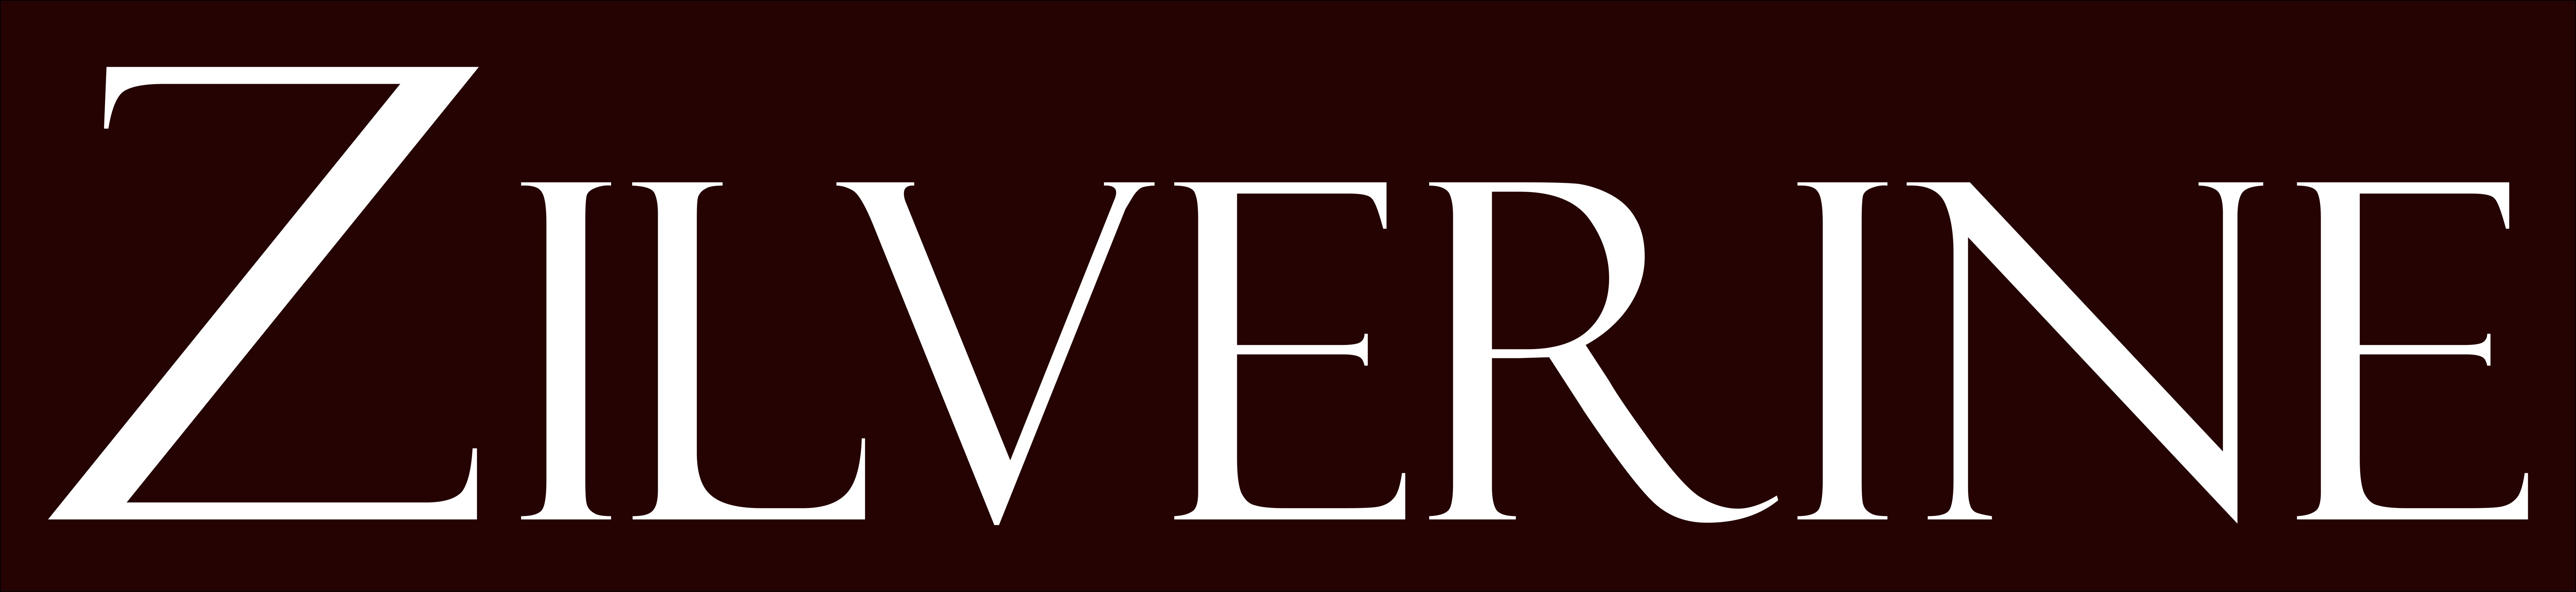 Zilverine Silver Jewellery Online Store Logo